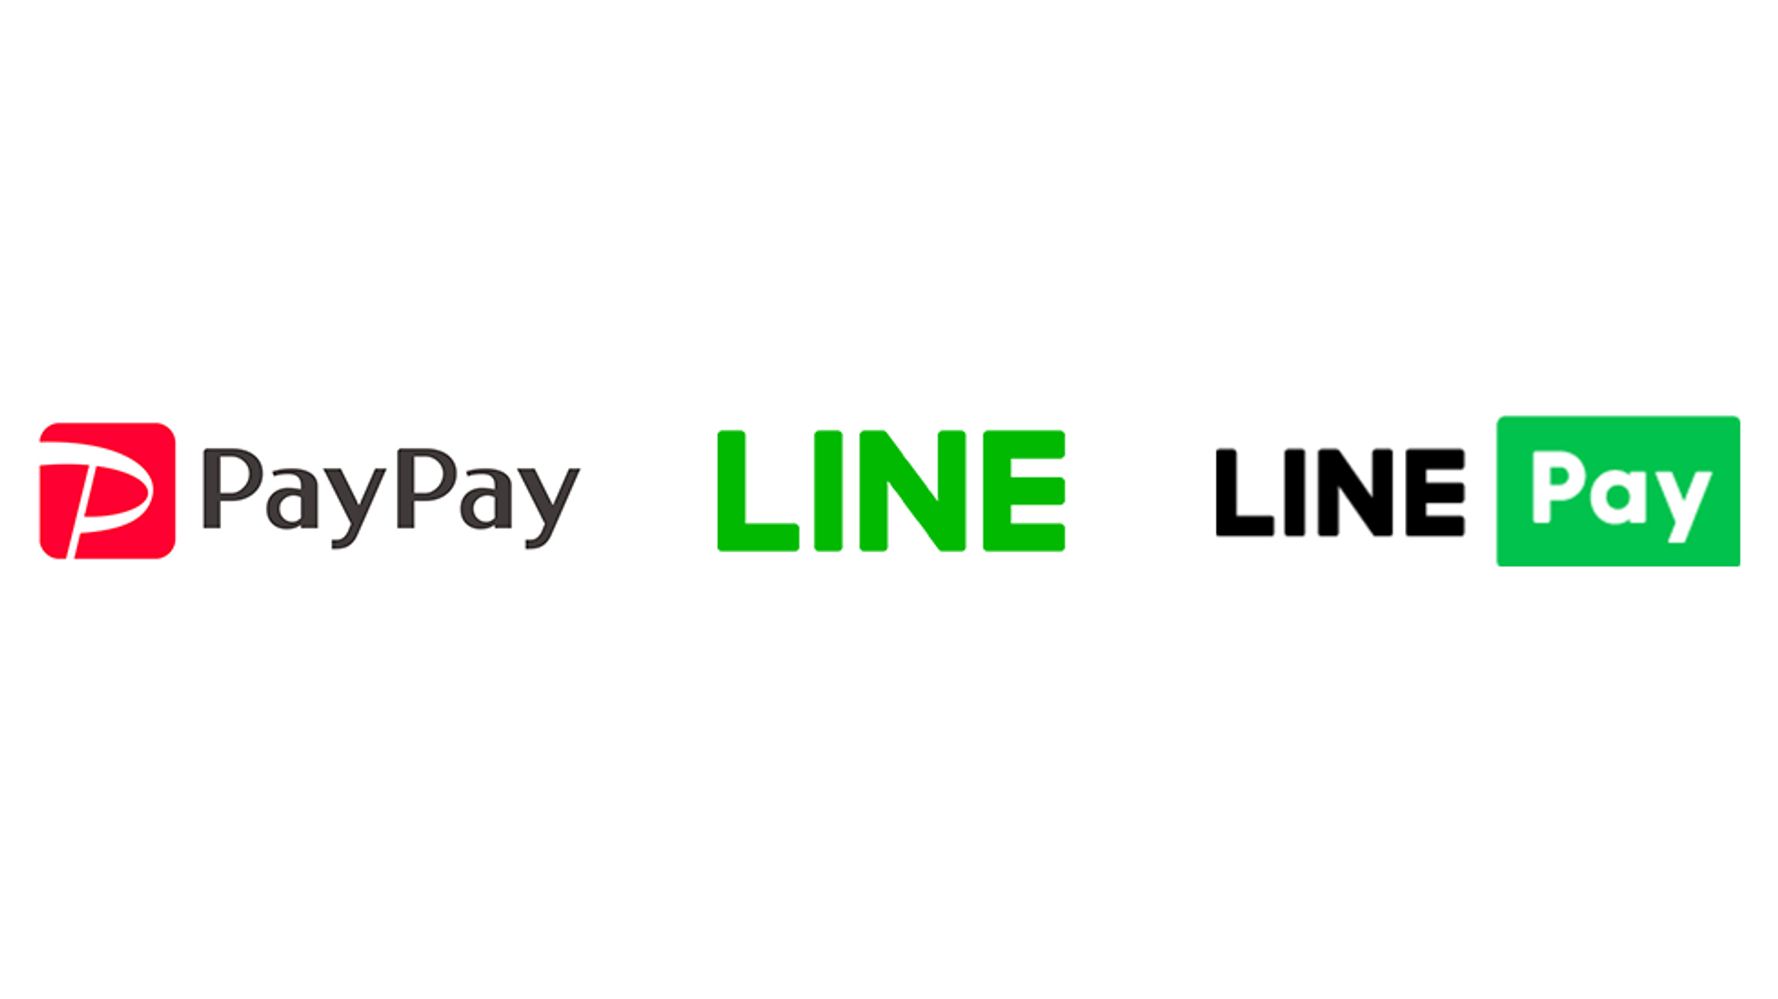 Lineポイント Paypayボーナスのポイント交換が可能に 3月16日からスタート ハフポスト